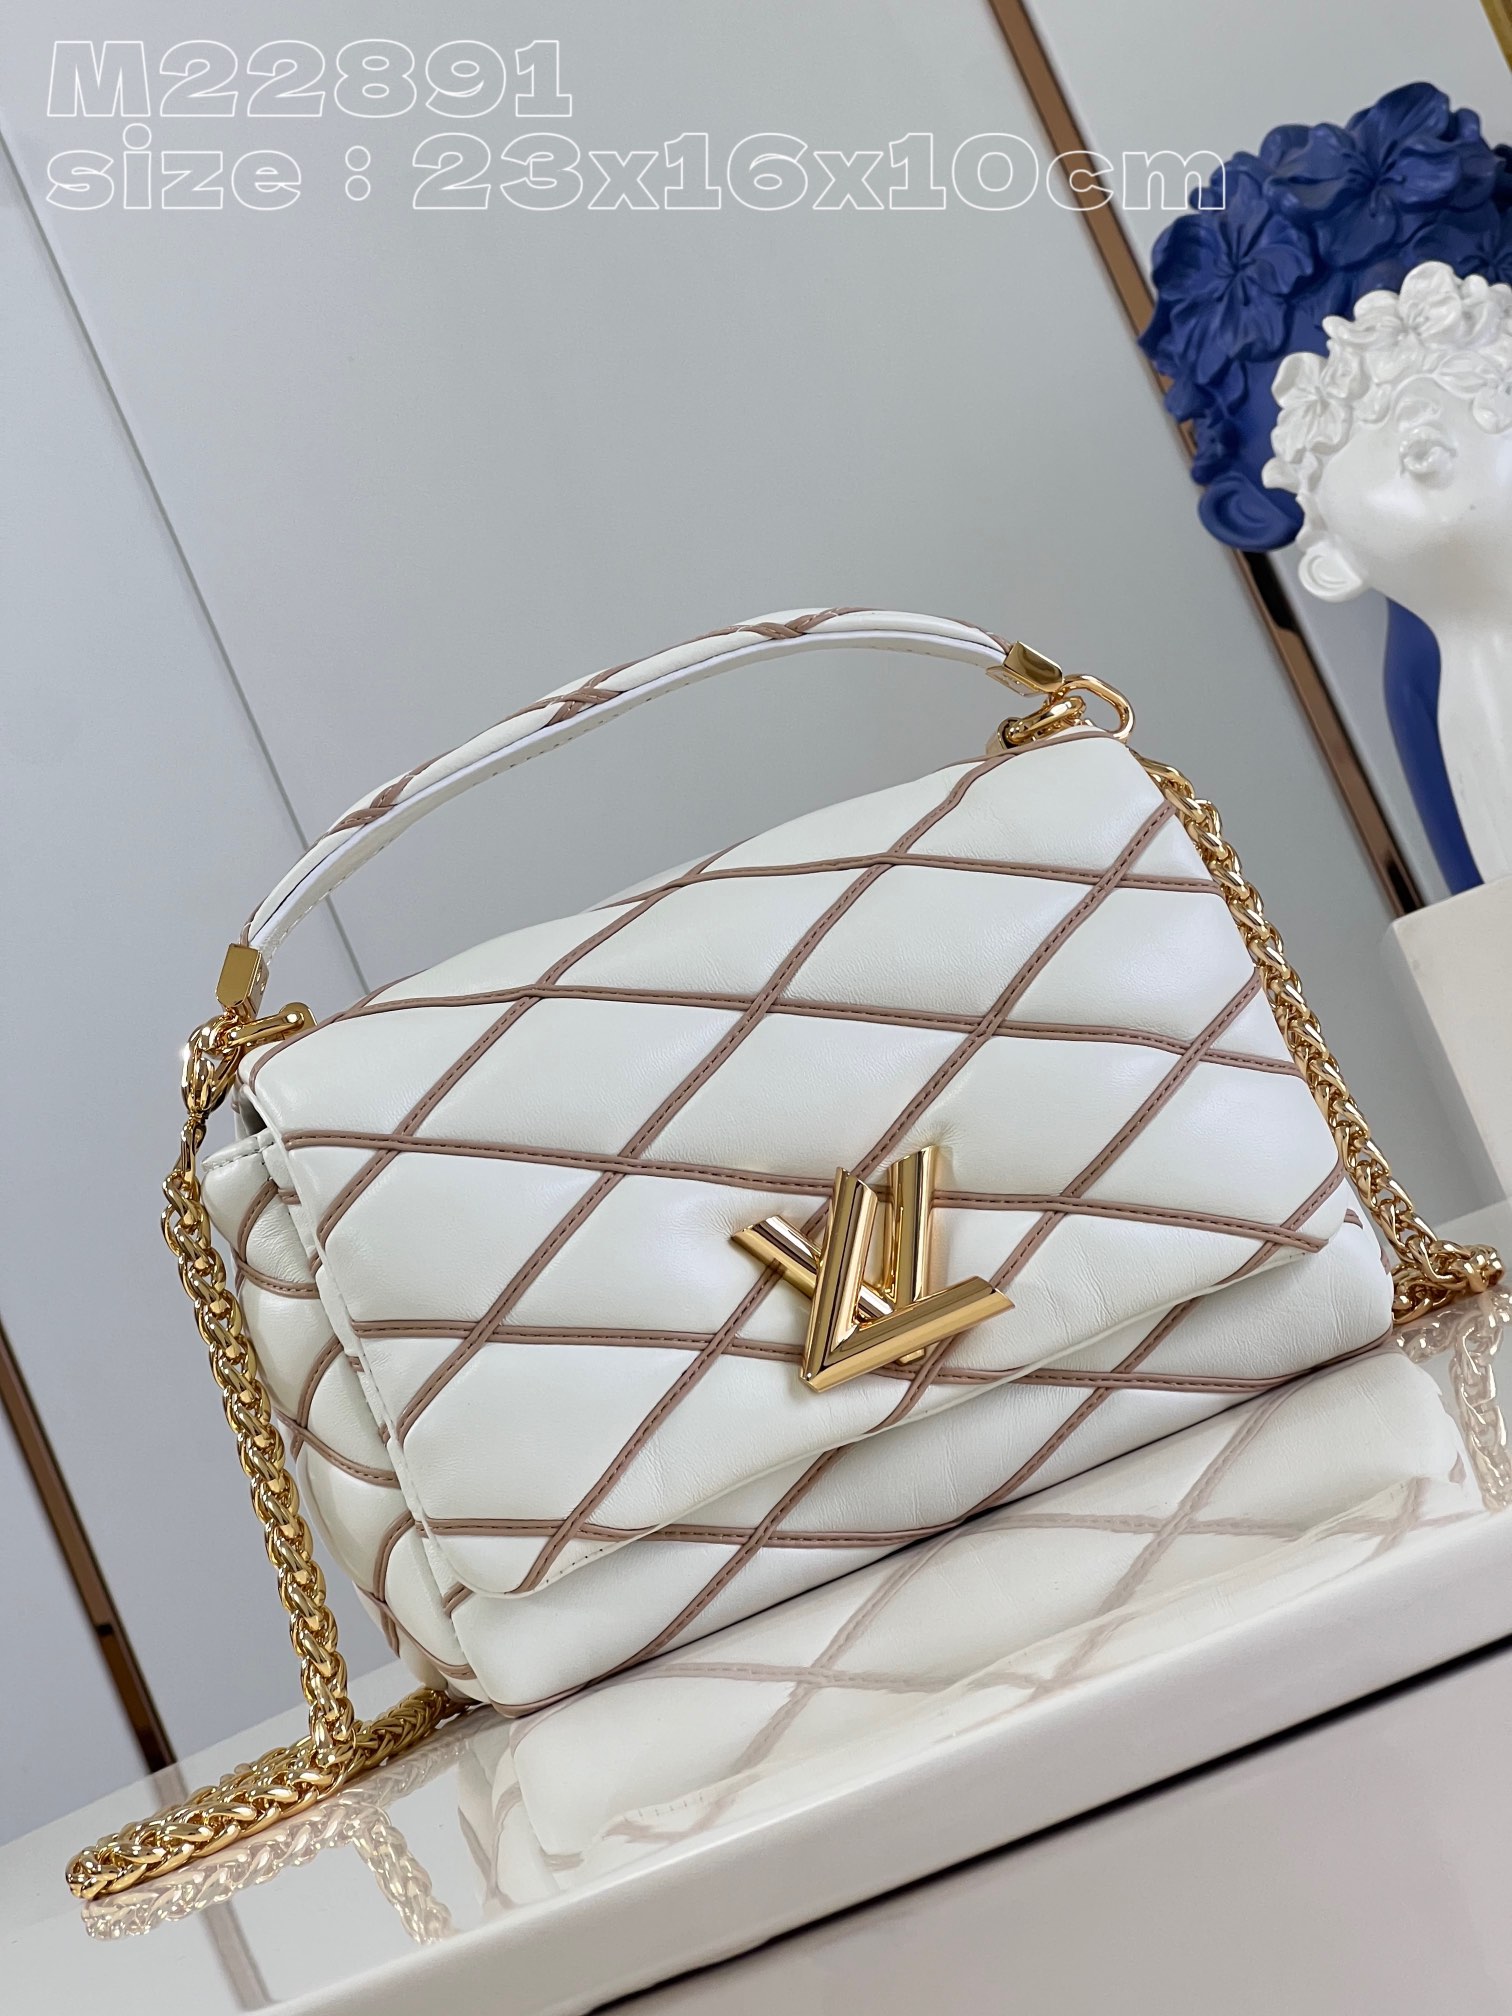 Louis Vuitton Bags Handbags Beige White Sheepskin LV Twist Chains M22891